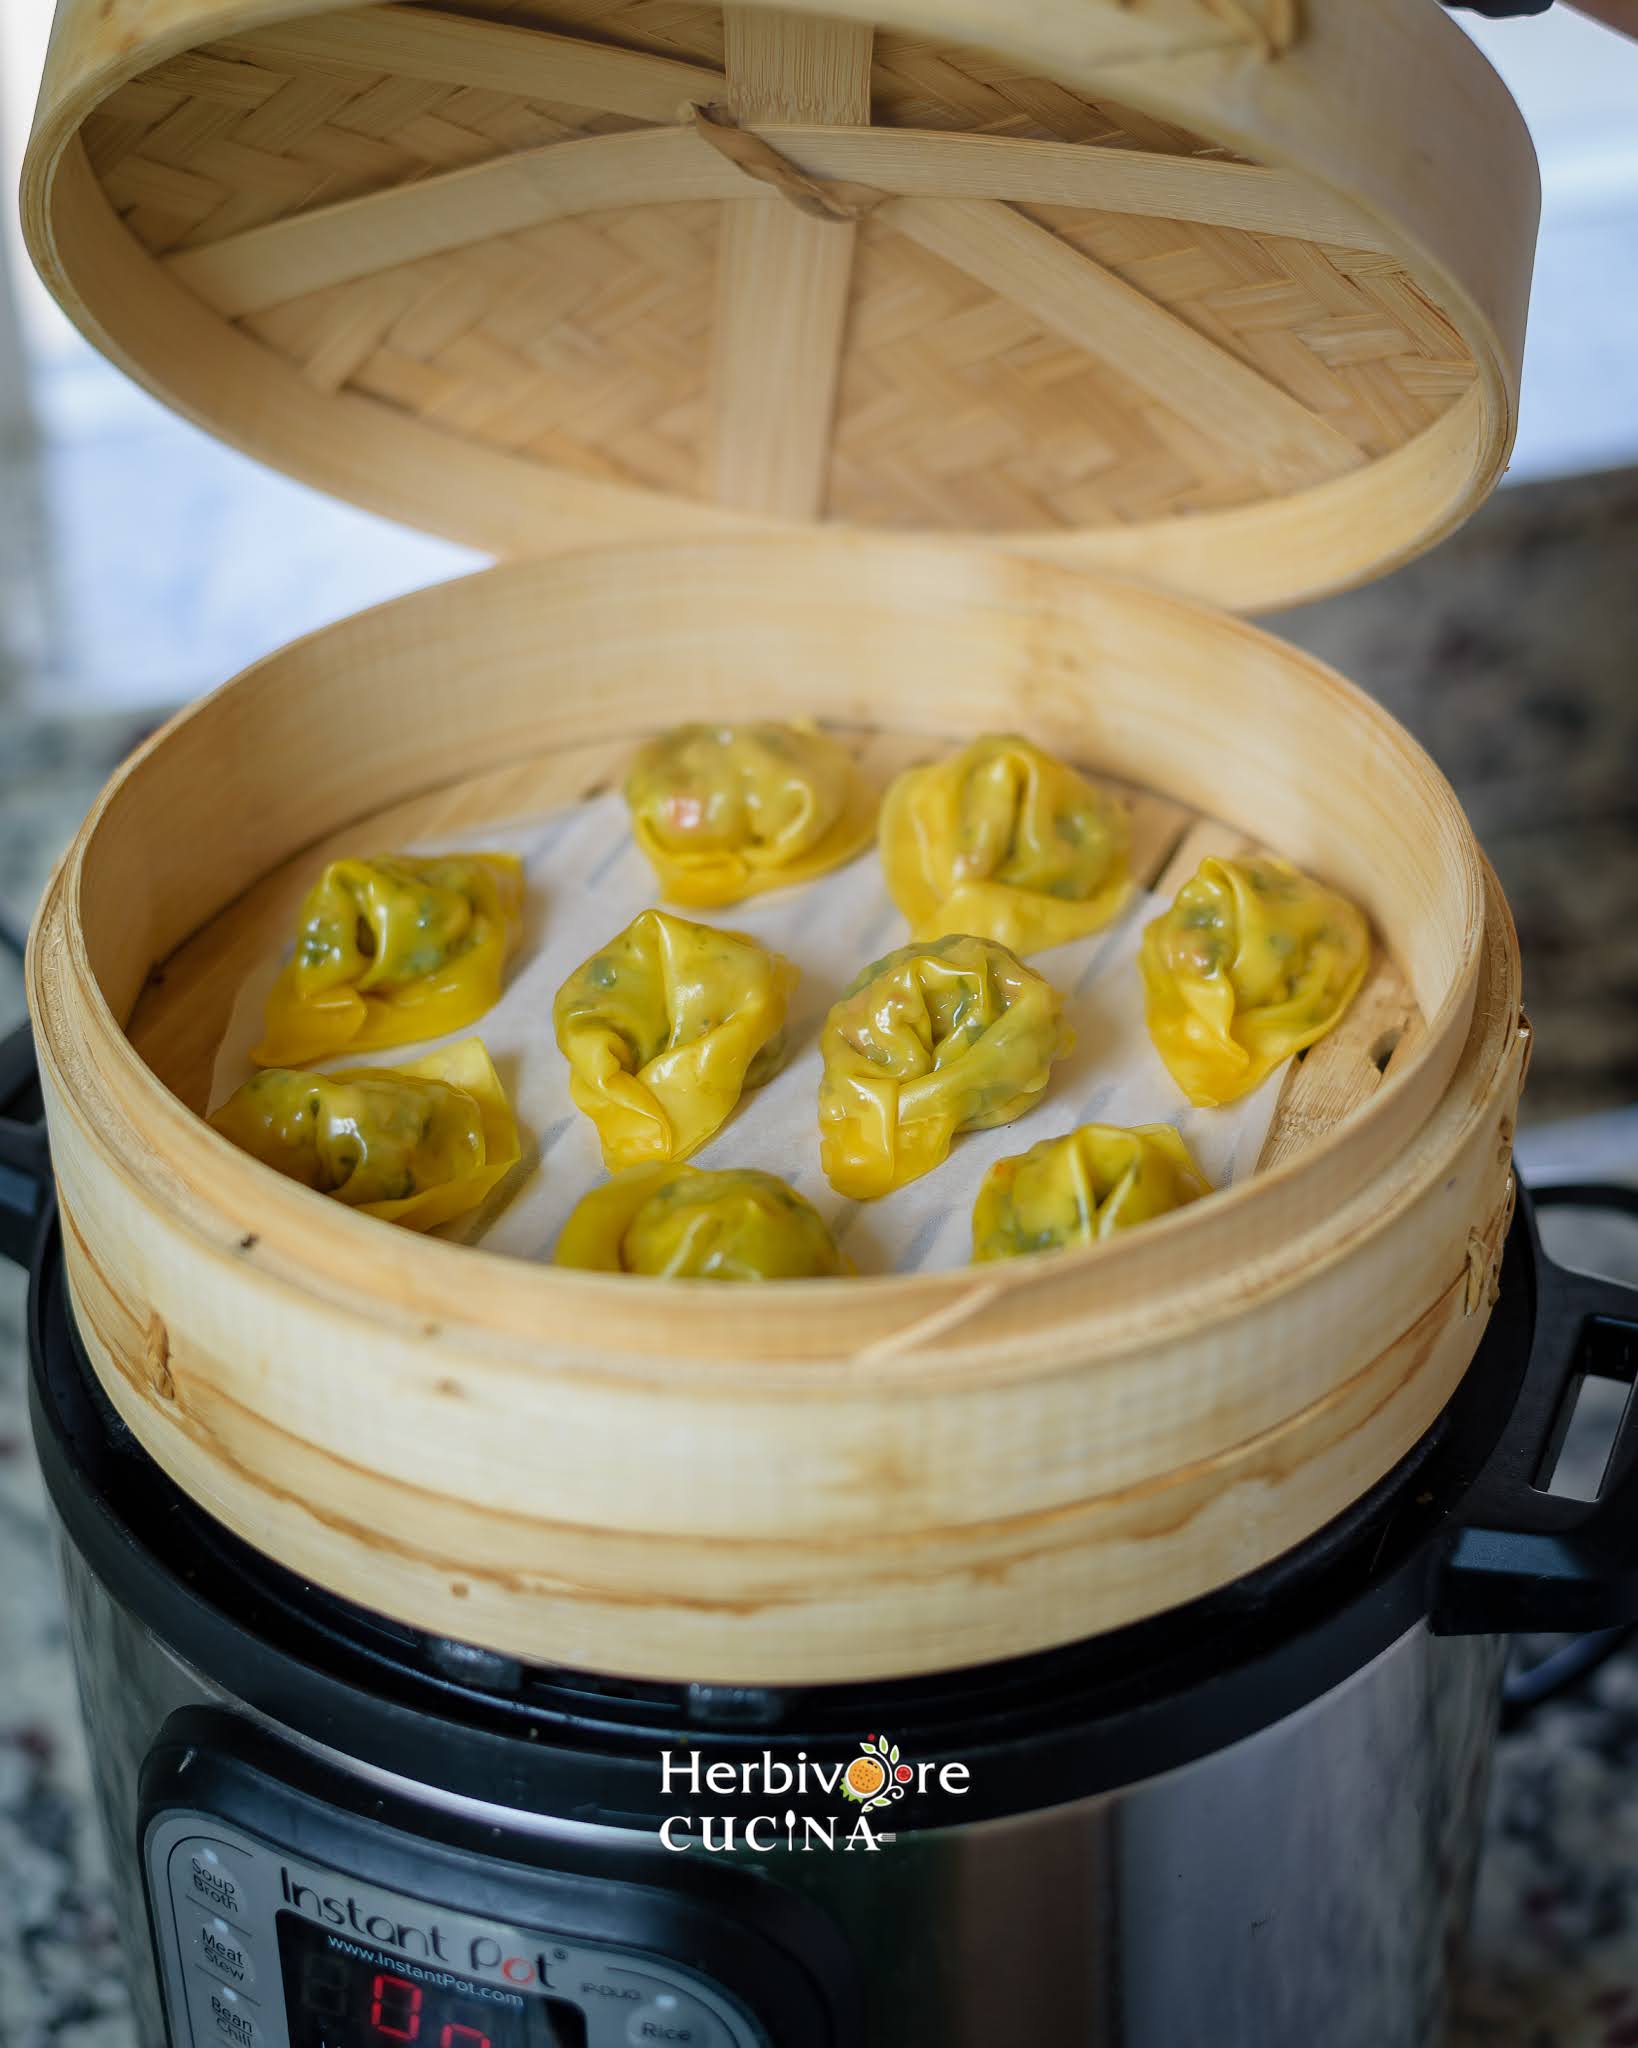 https://herbivorecucina.com/wp-content/uploads/2020/12/Instant-Pot-Steamed-dumplings-1.jpg